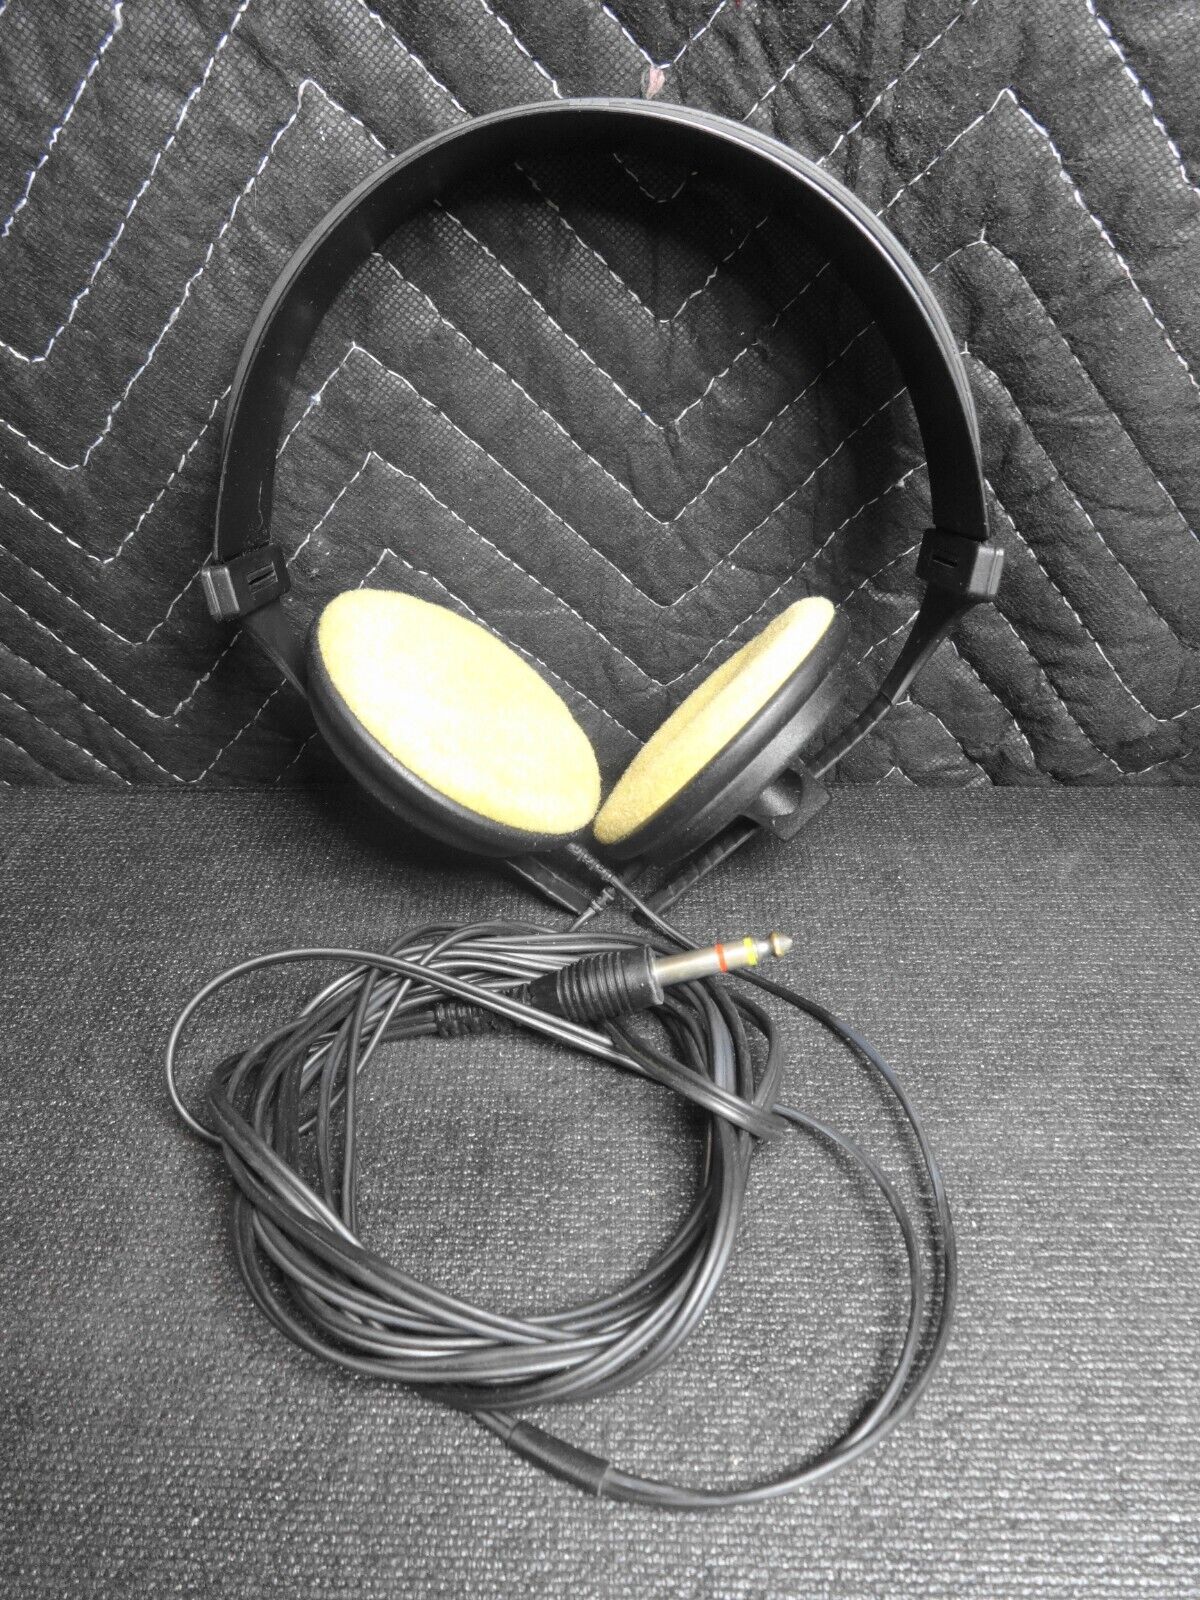 SENNHEISER VINTAGE HEADPHONES HD 420 SL GERMANY Old School Plug Audiophile